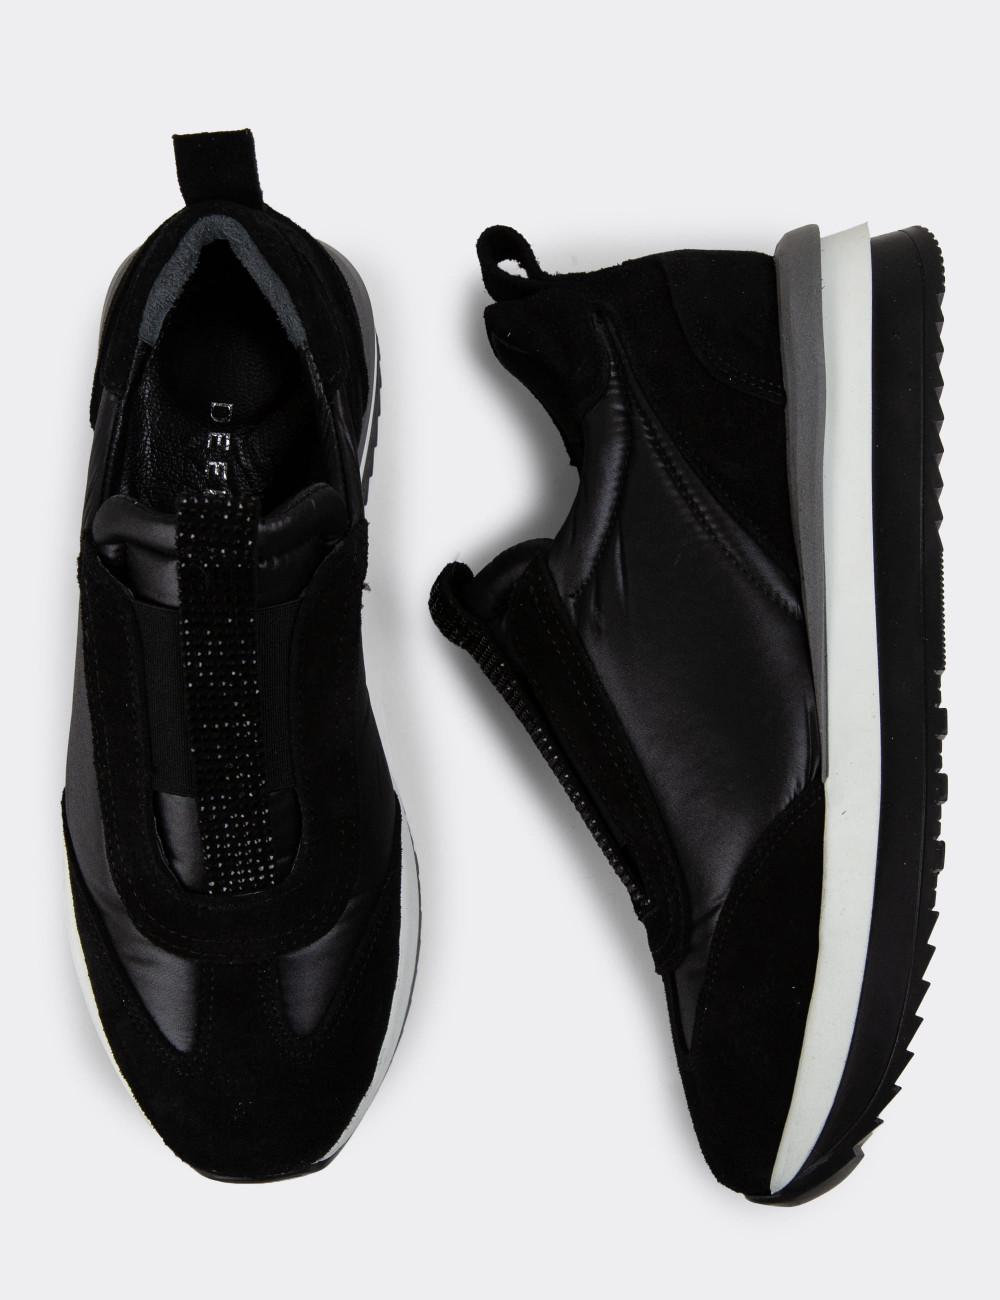 Hakiki Süet Siyah Sneaker Kadın Ayakkabı - R3531ZSYHT01